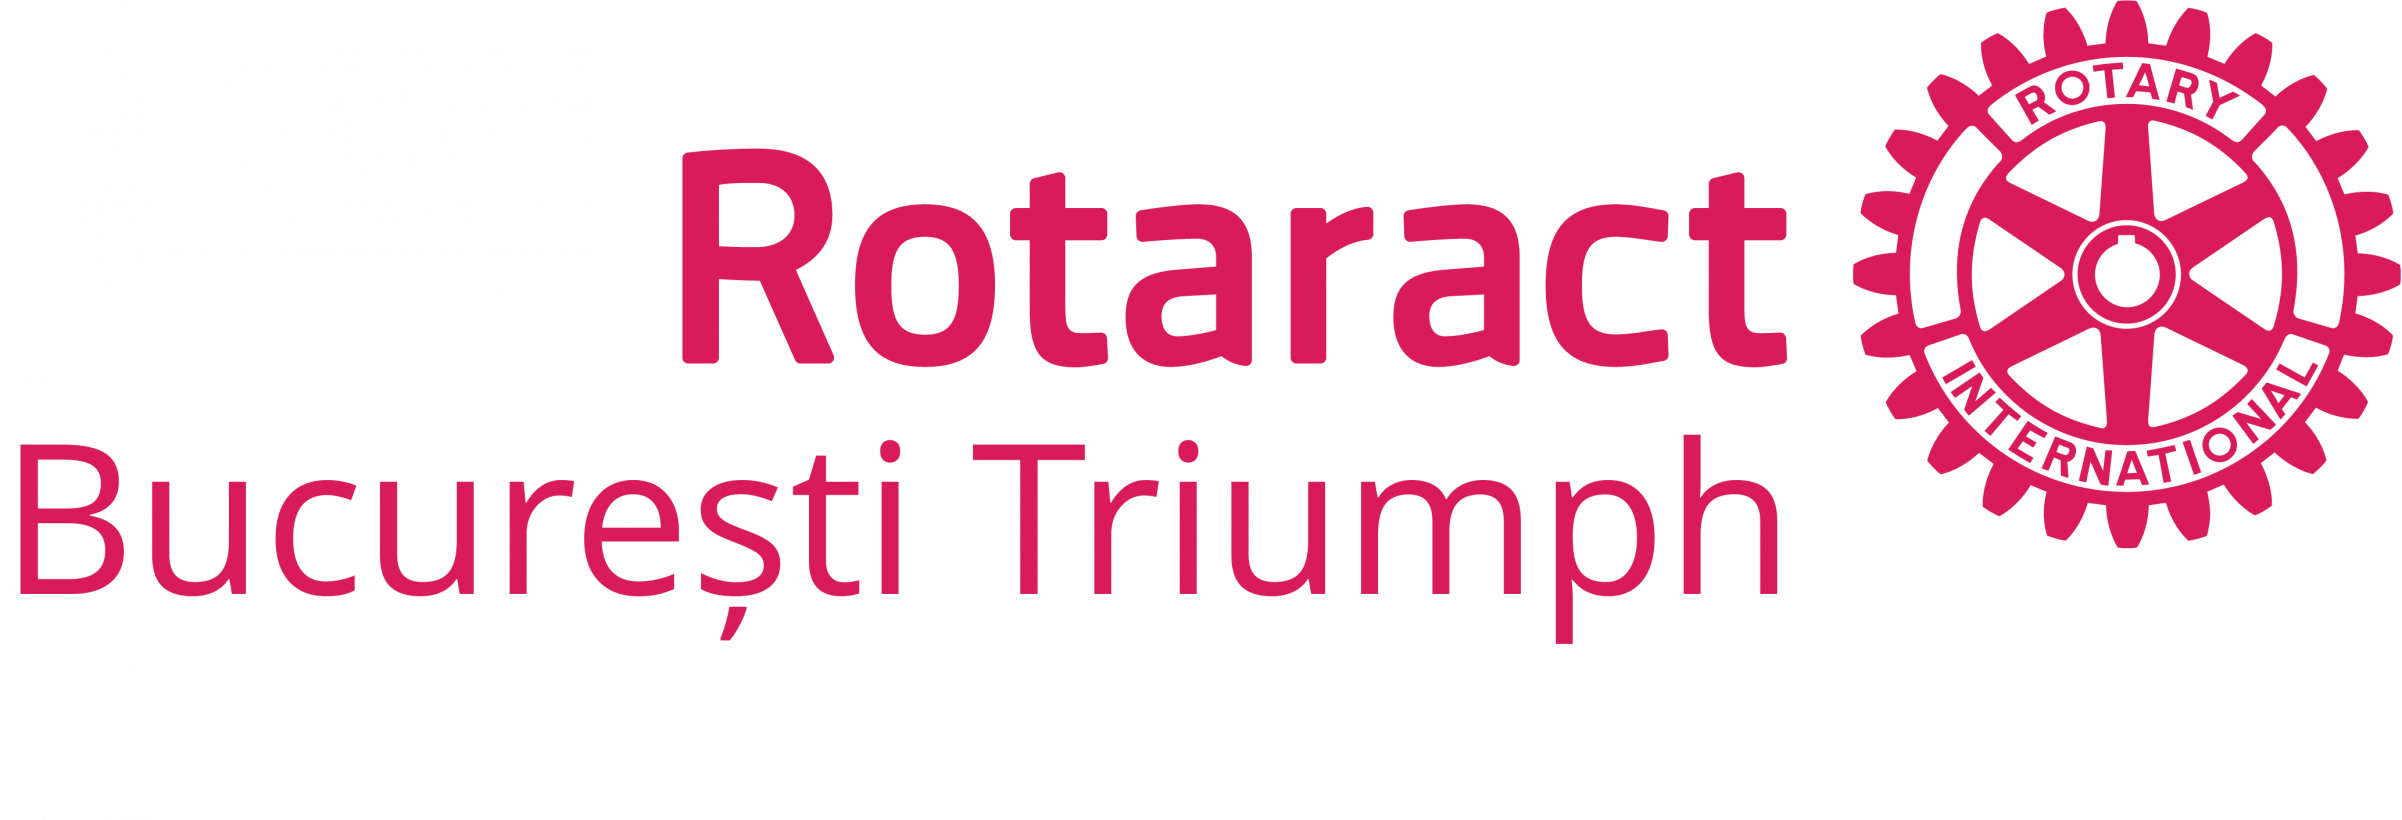 Rotaract Triumph